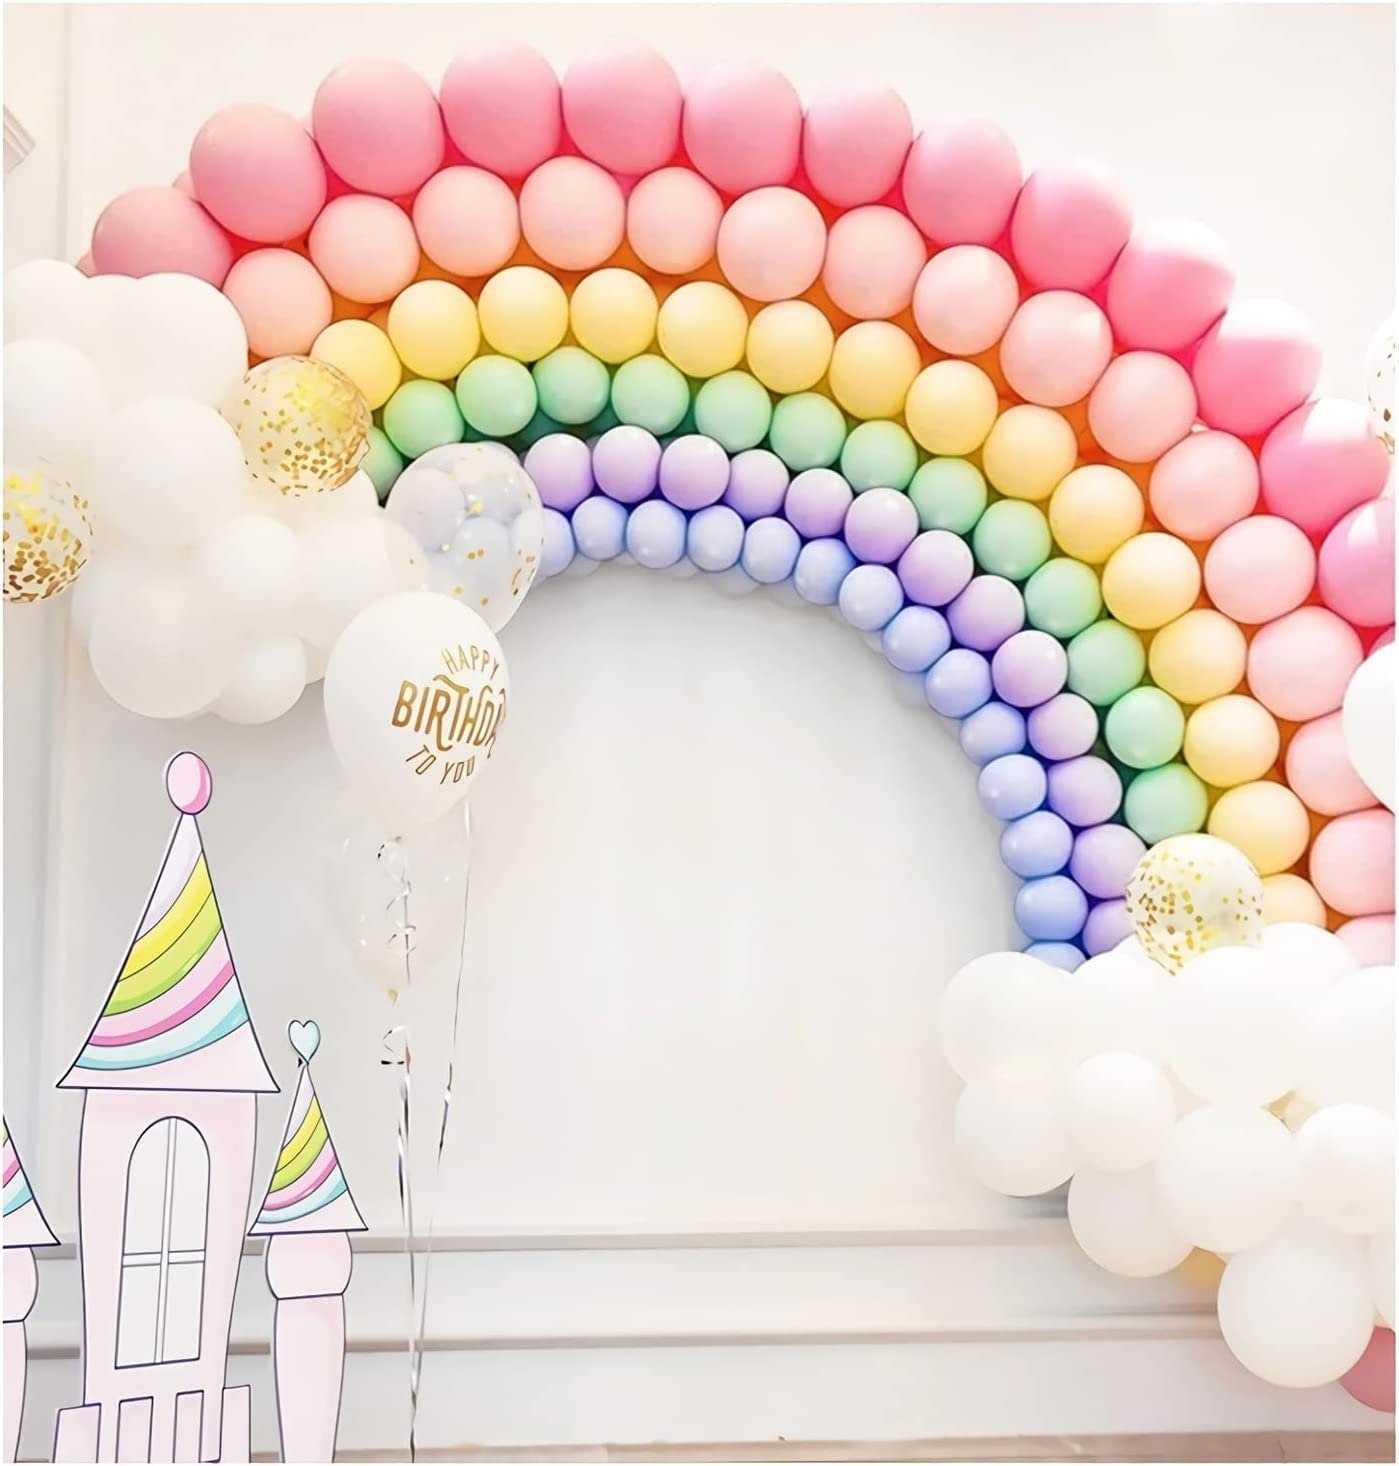 Pastel Rainbow Balloons, Pastel Rainbow 1st Birthday, Pastel Balloons 